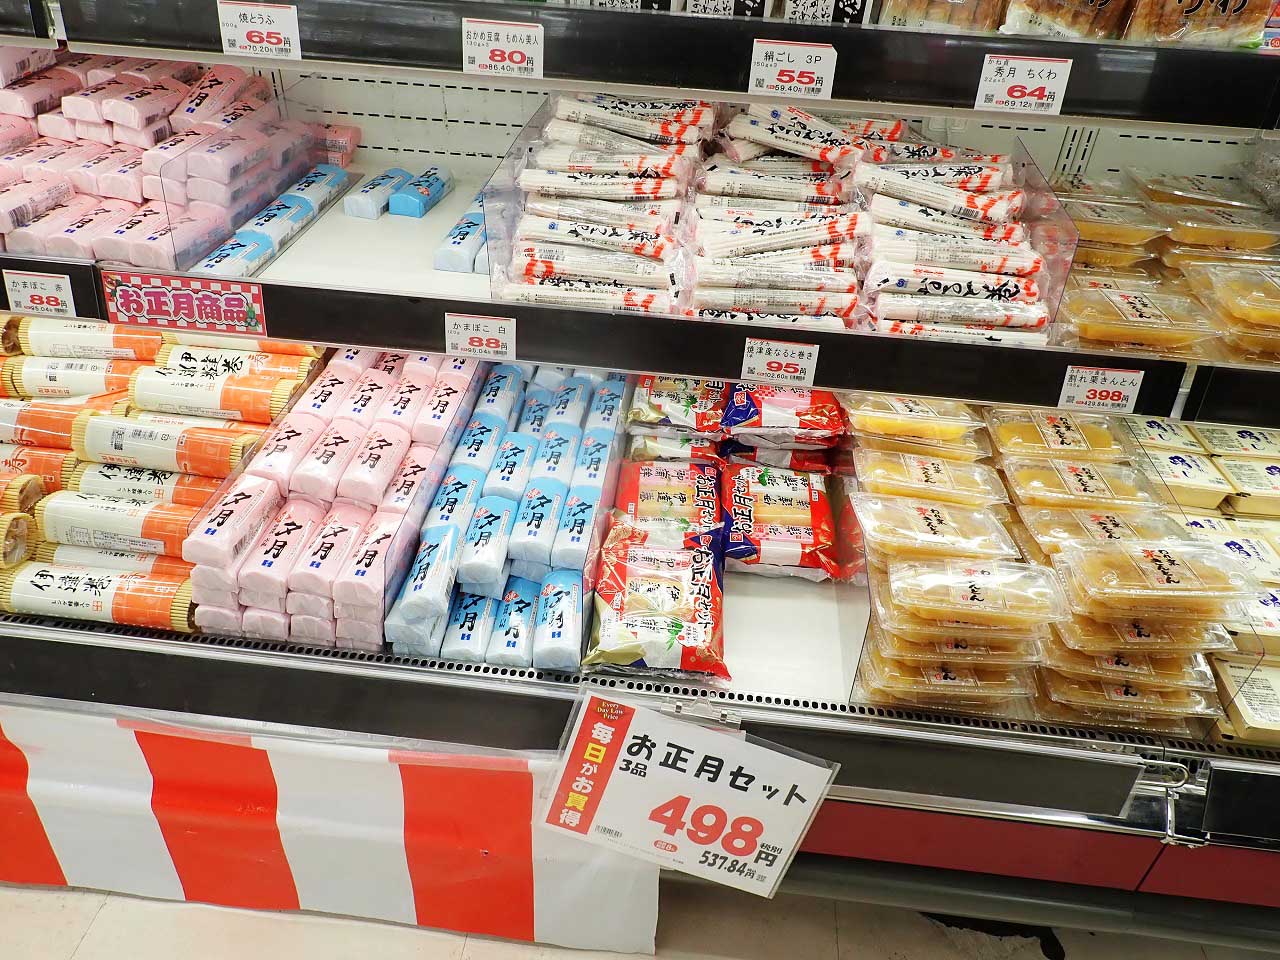 『業務スーパー川越店』で売られている正月用食品